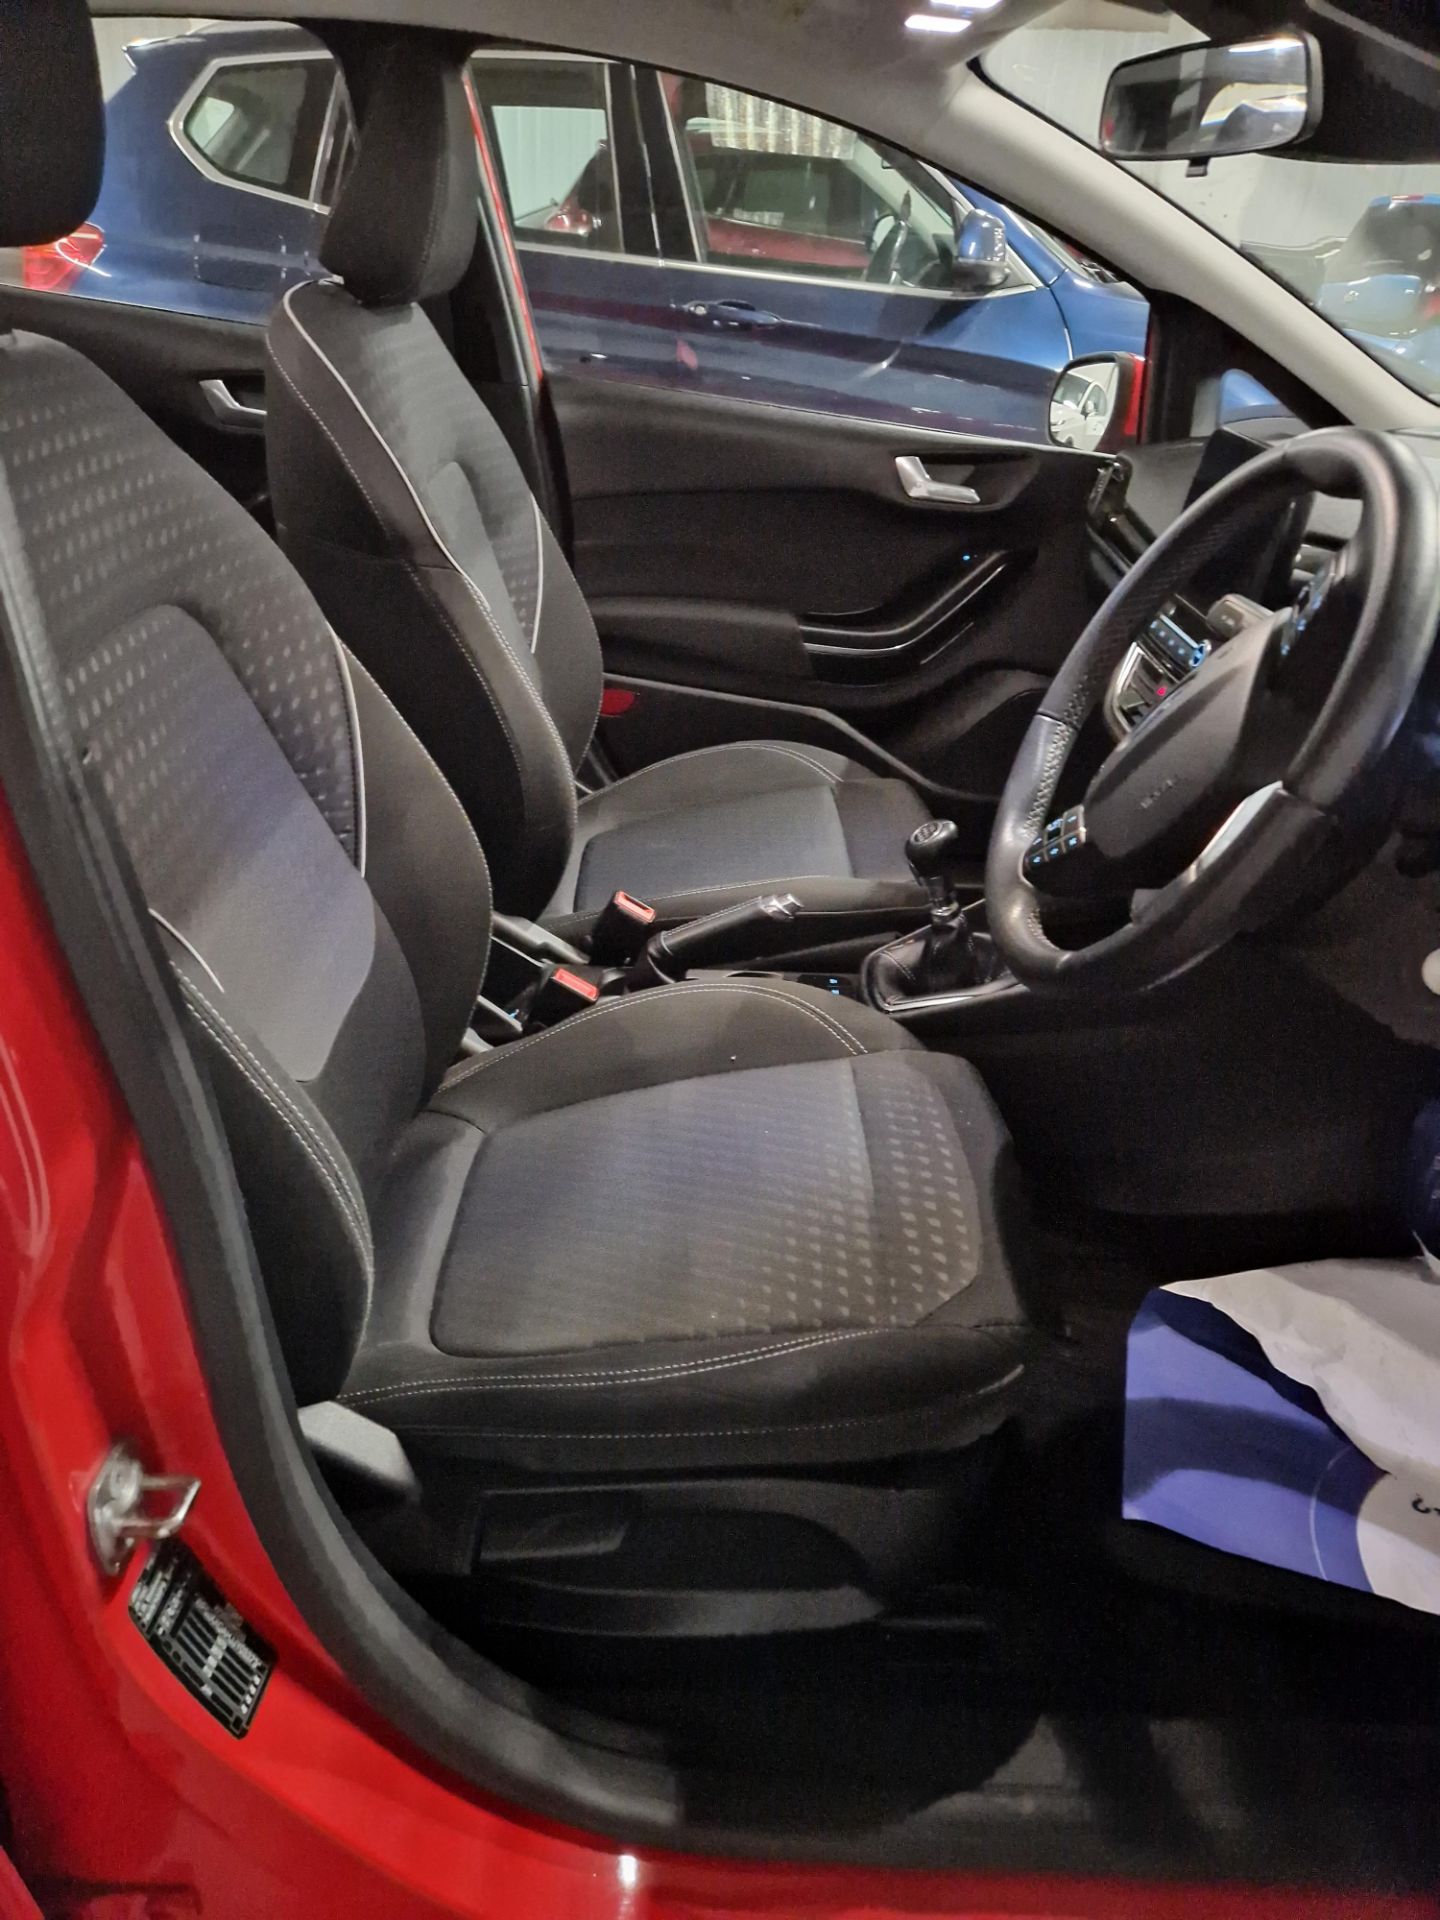 Ford Fiesta 1.0 EcoBoost Zetec 5dr Hatchback, Registration No. MT18 KGN, Mileage: 18,515 (at time of - Image 5 of 8